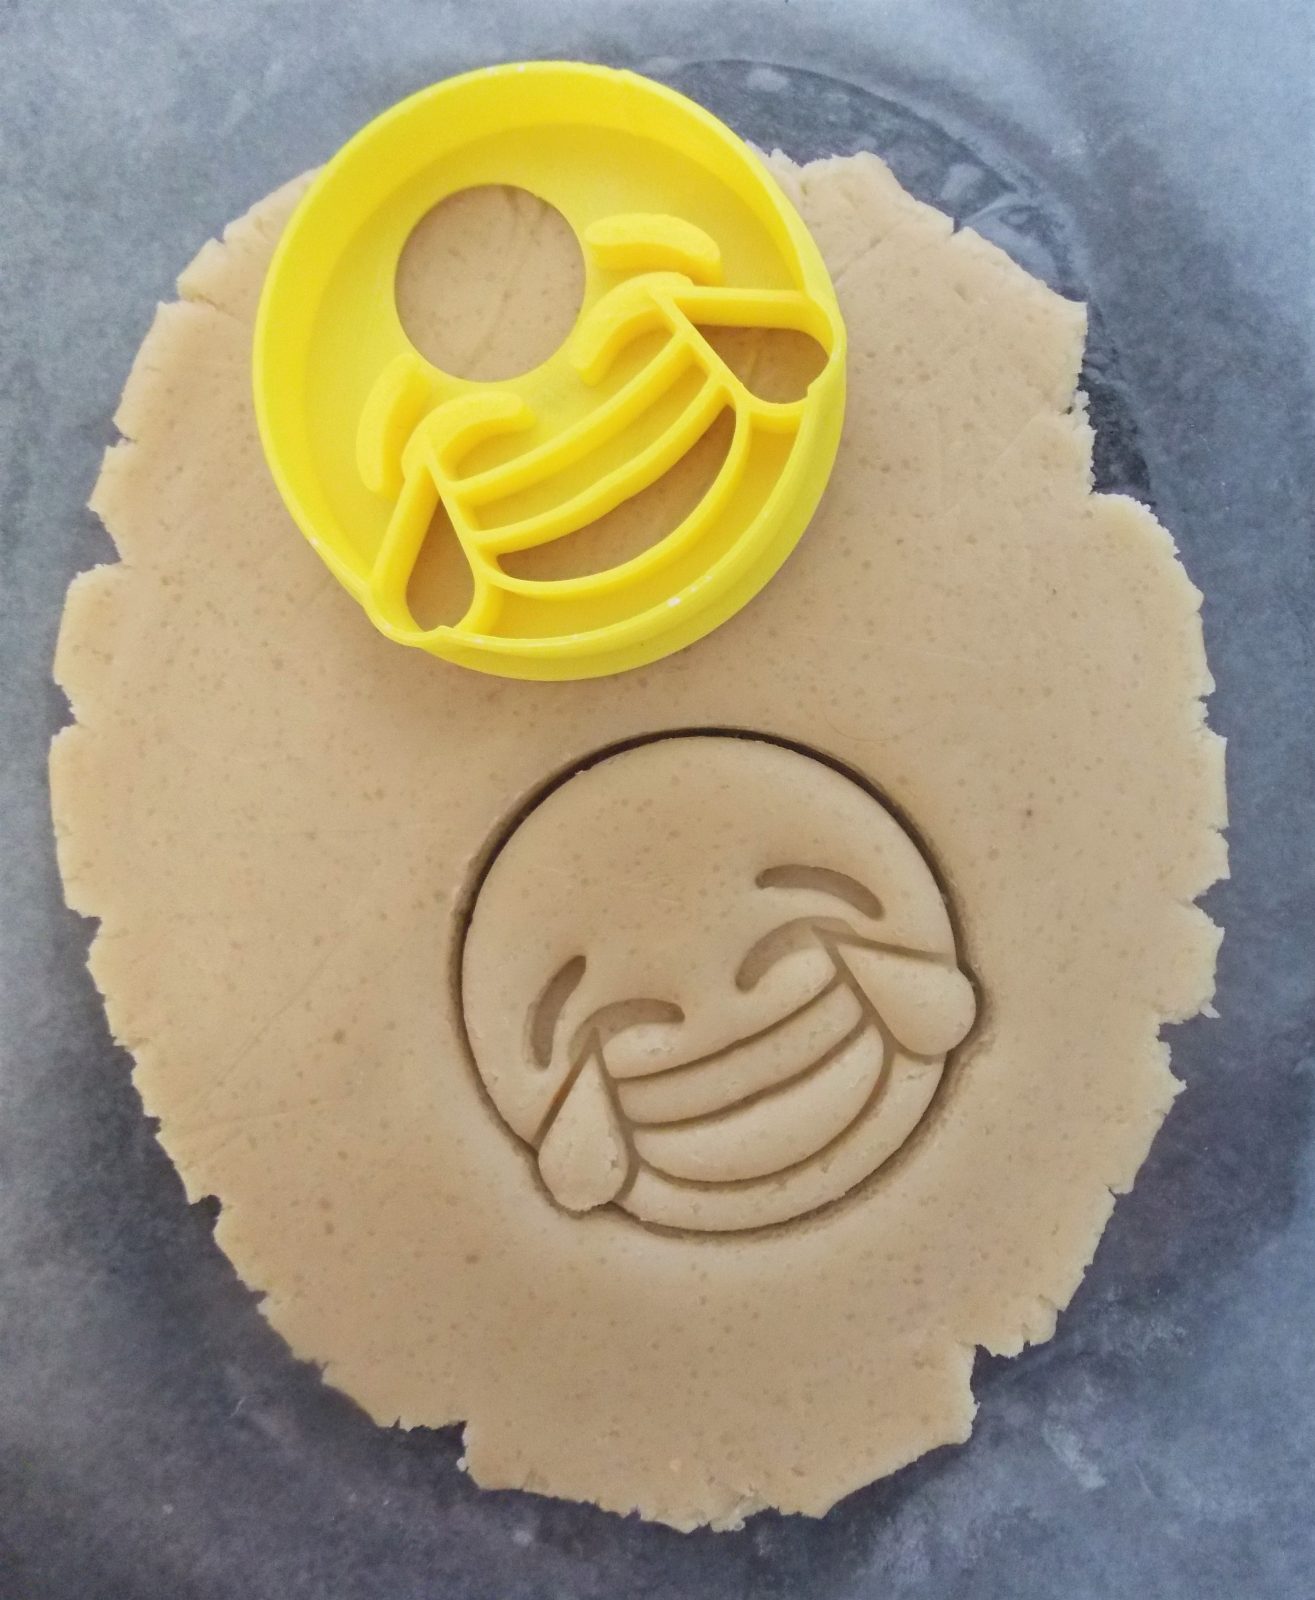 Mini Laughing Cry Emoji Cookie Cutter